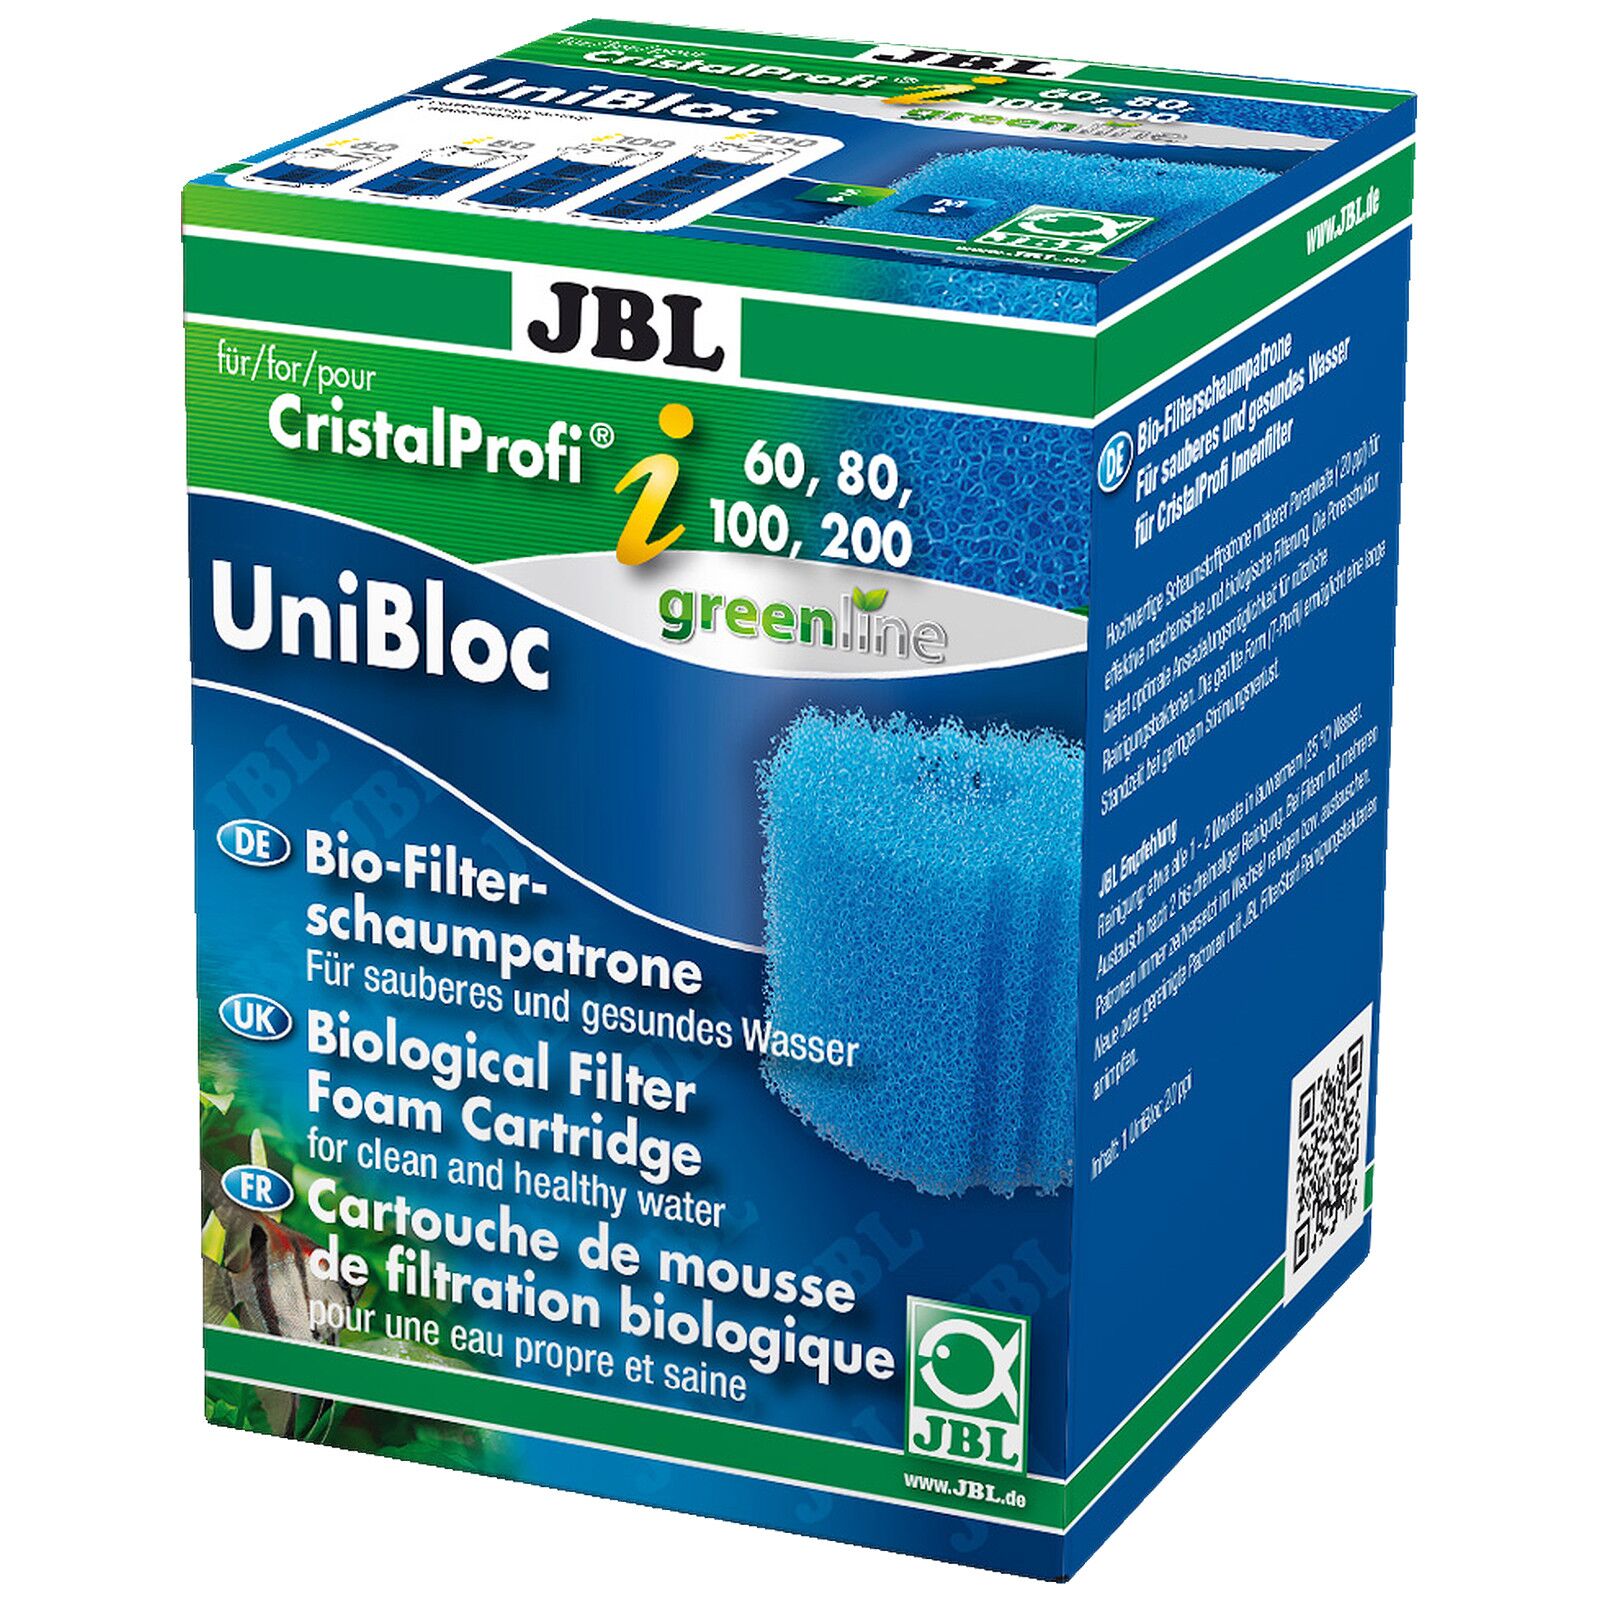 JBL - CristalProfi m greenline - Filtre angulaire - 20 à 80 L